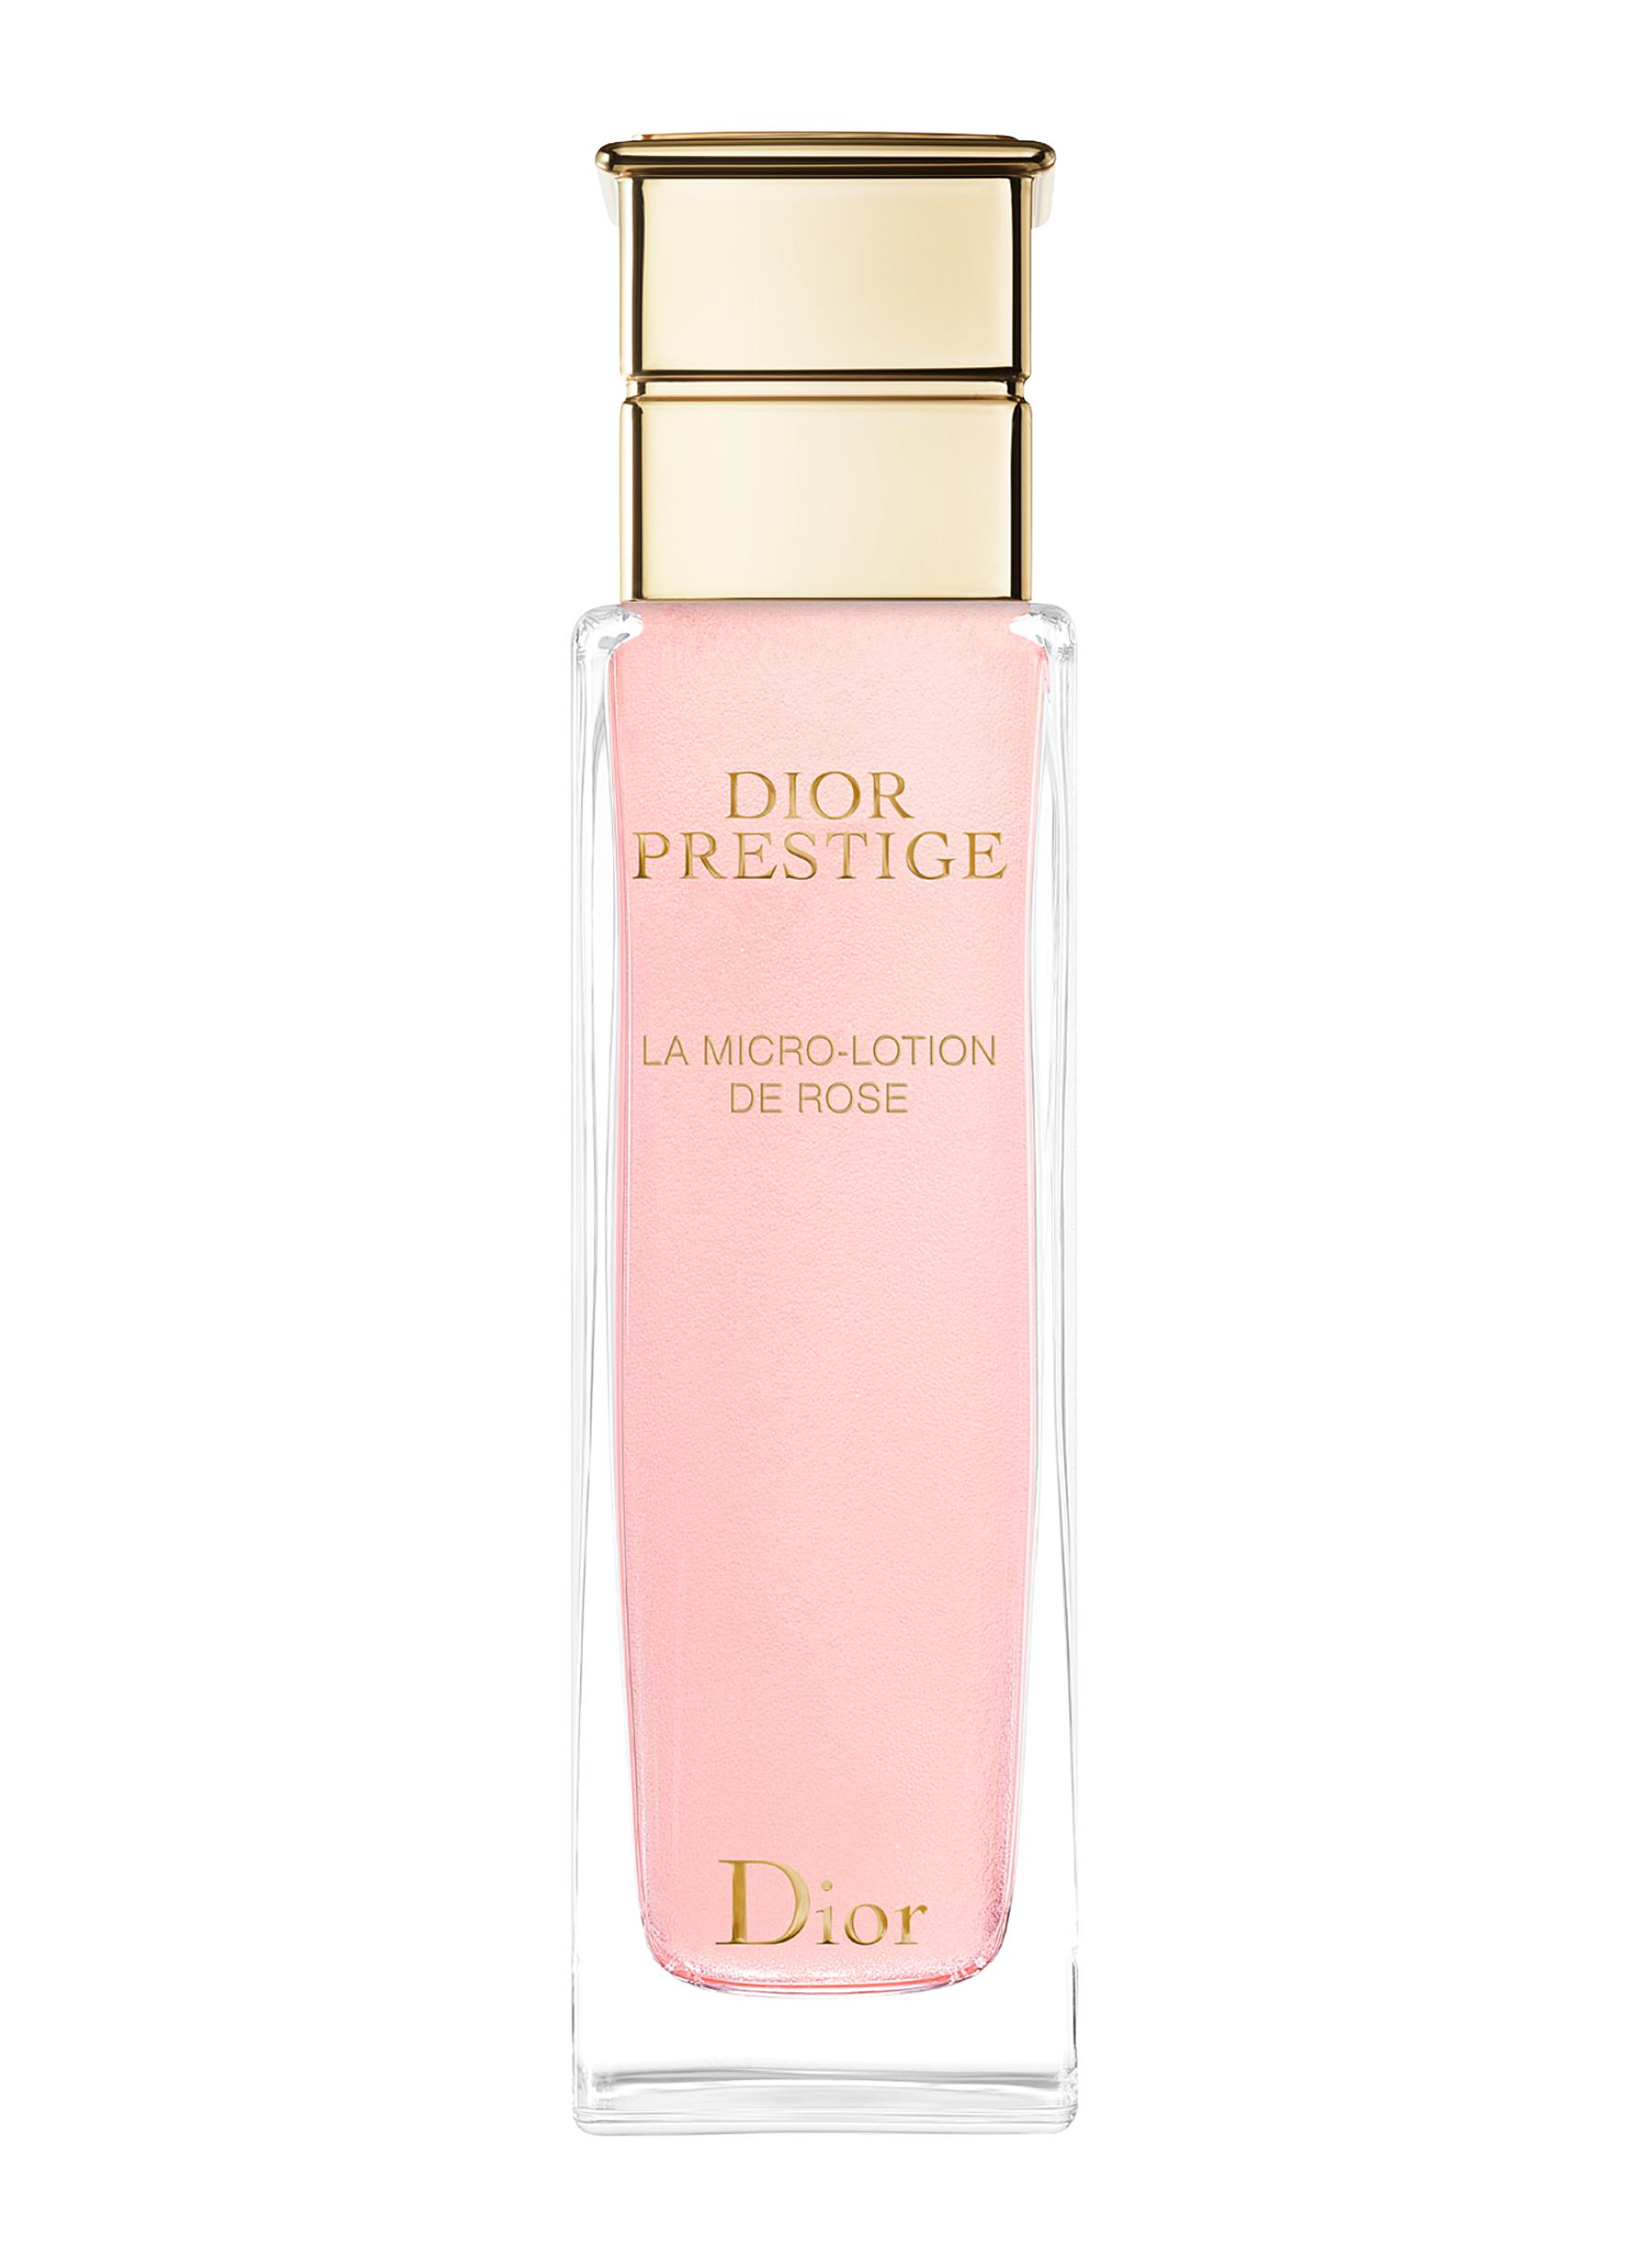 dior prestige rose oil